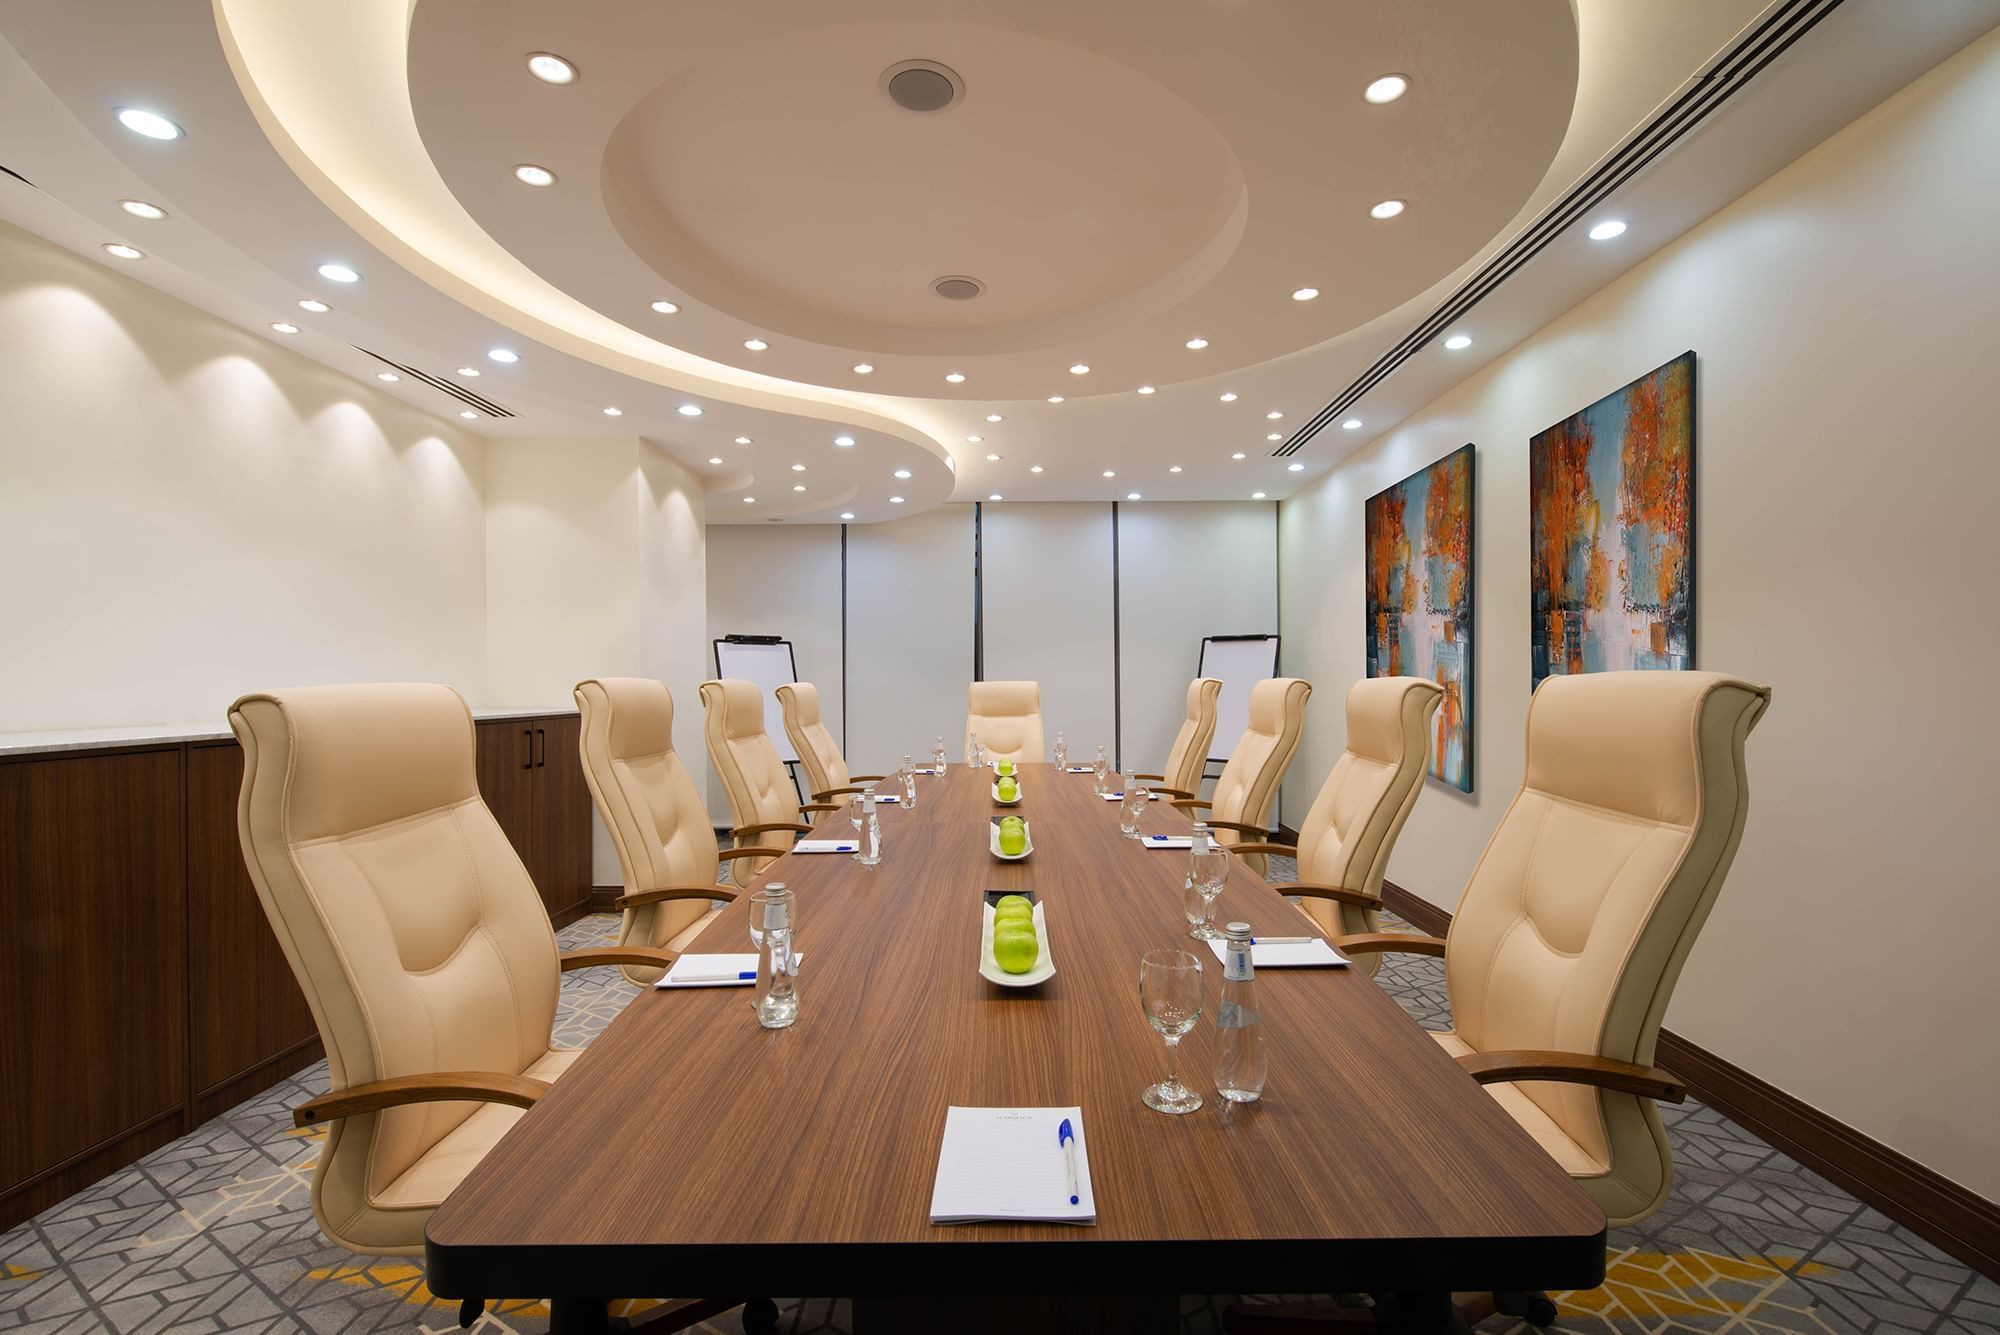 Meeting Room with long table at Warwick Riyadh